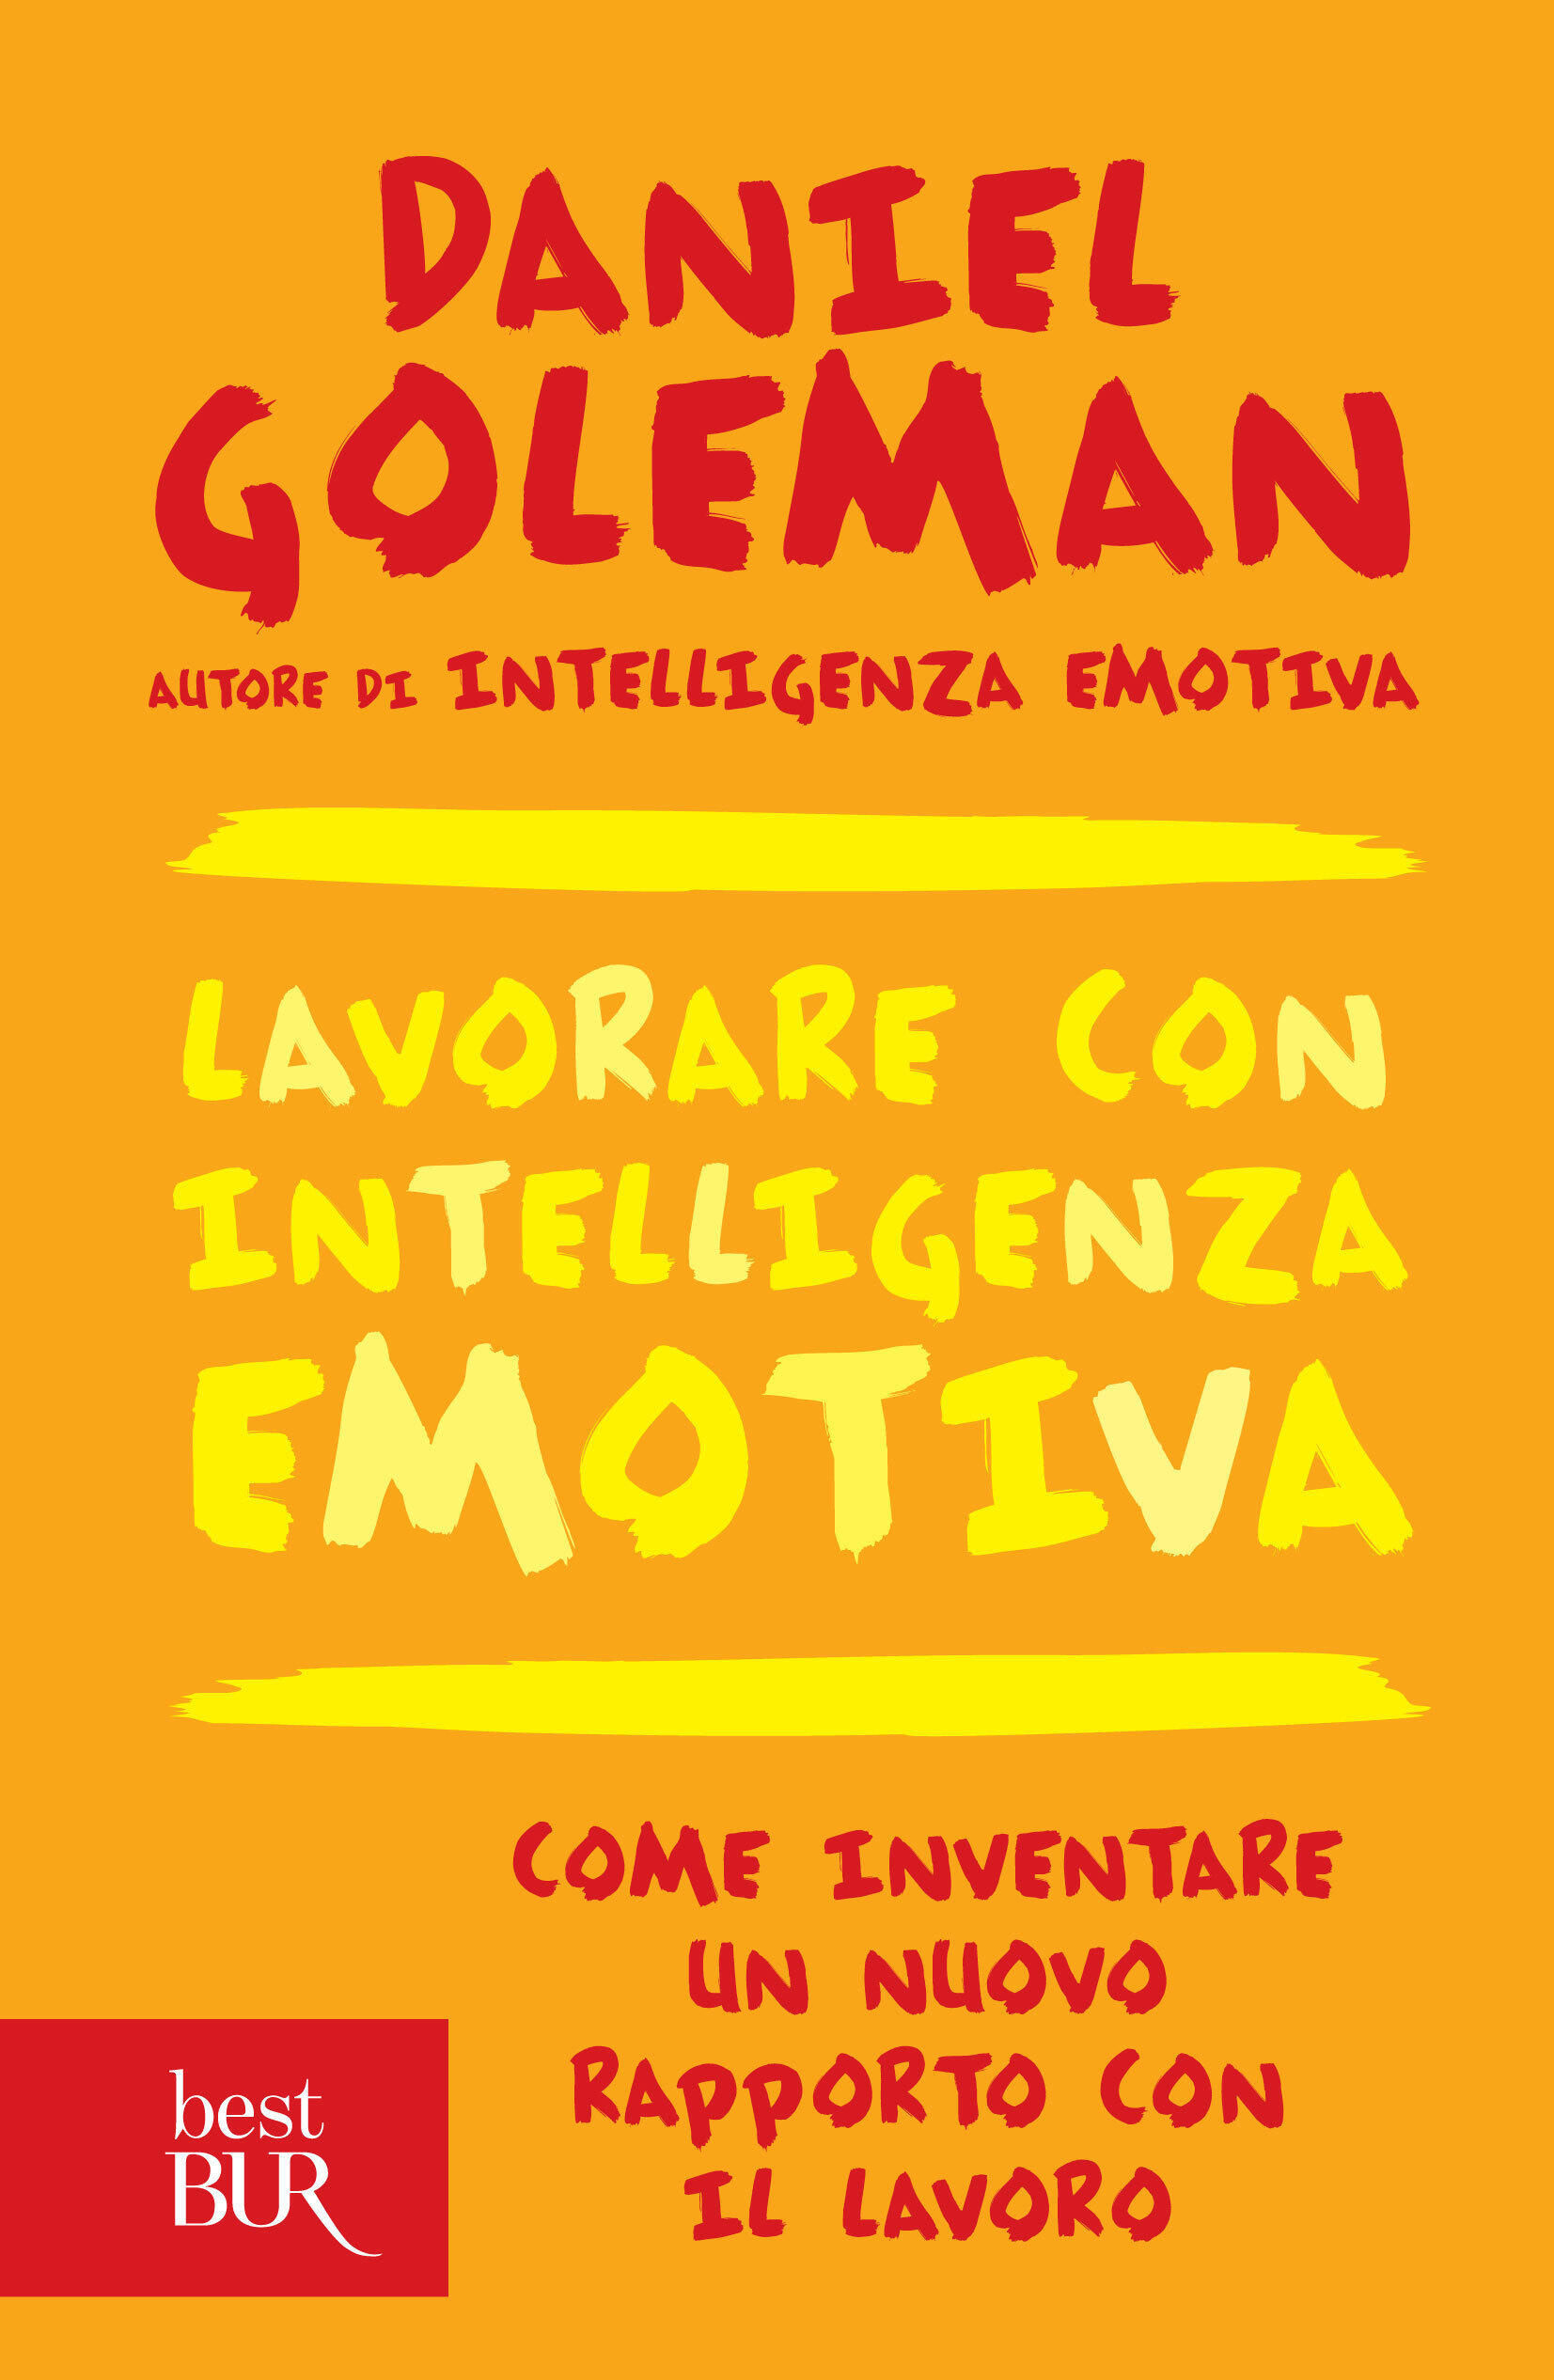 Lavorare con intelligenza emotiva Goleman, Daniel Ebook PDF con DRM IBS